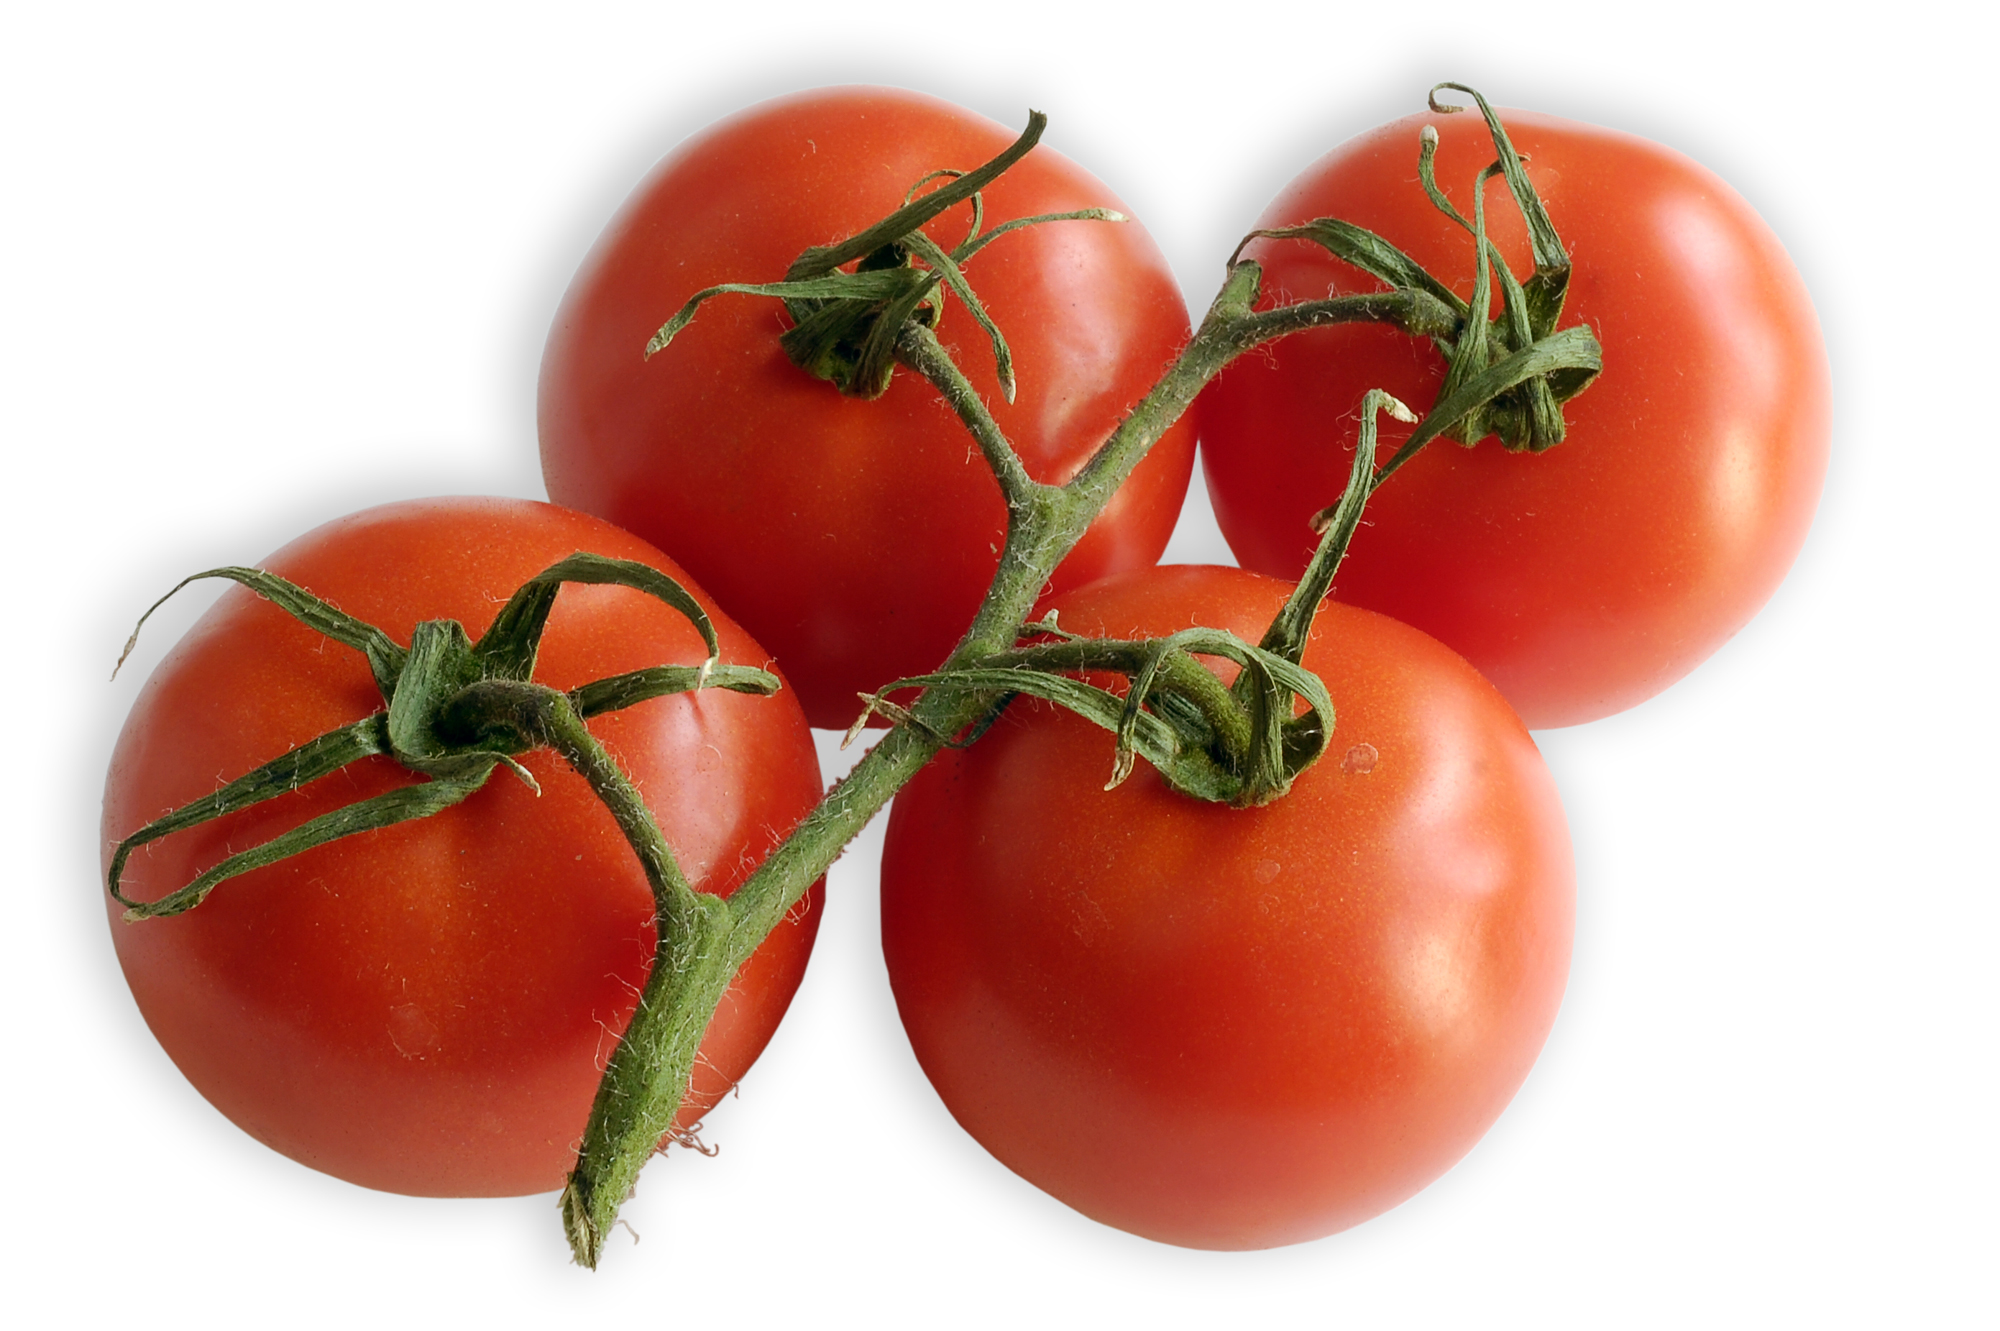 Tomate, ein gesunder Tausendsassa